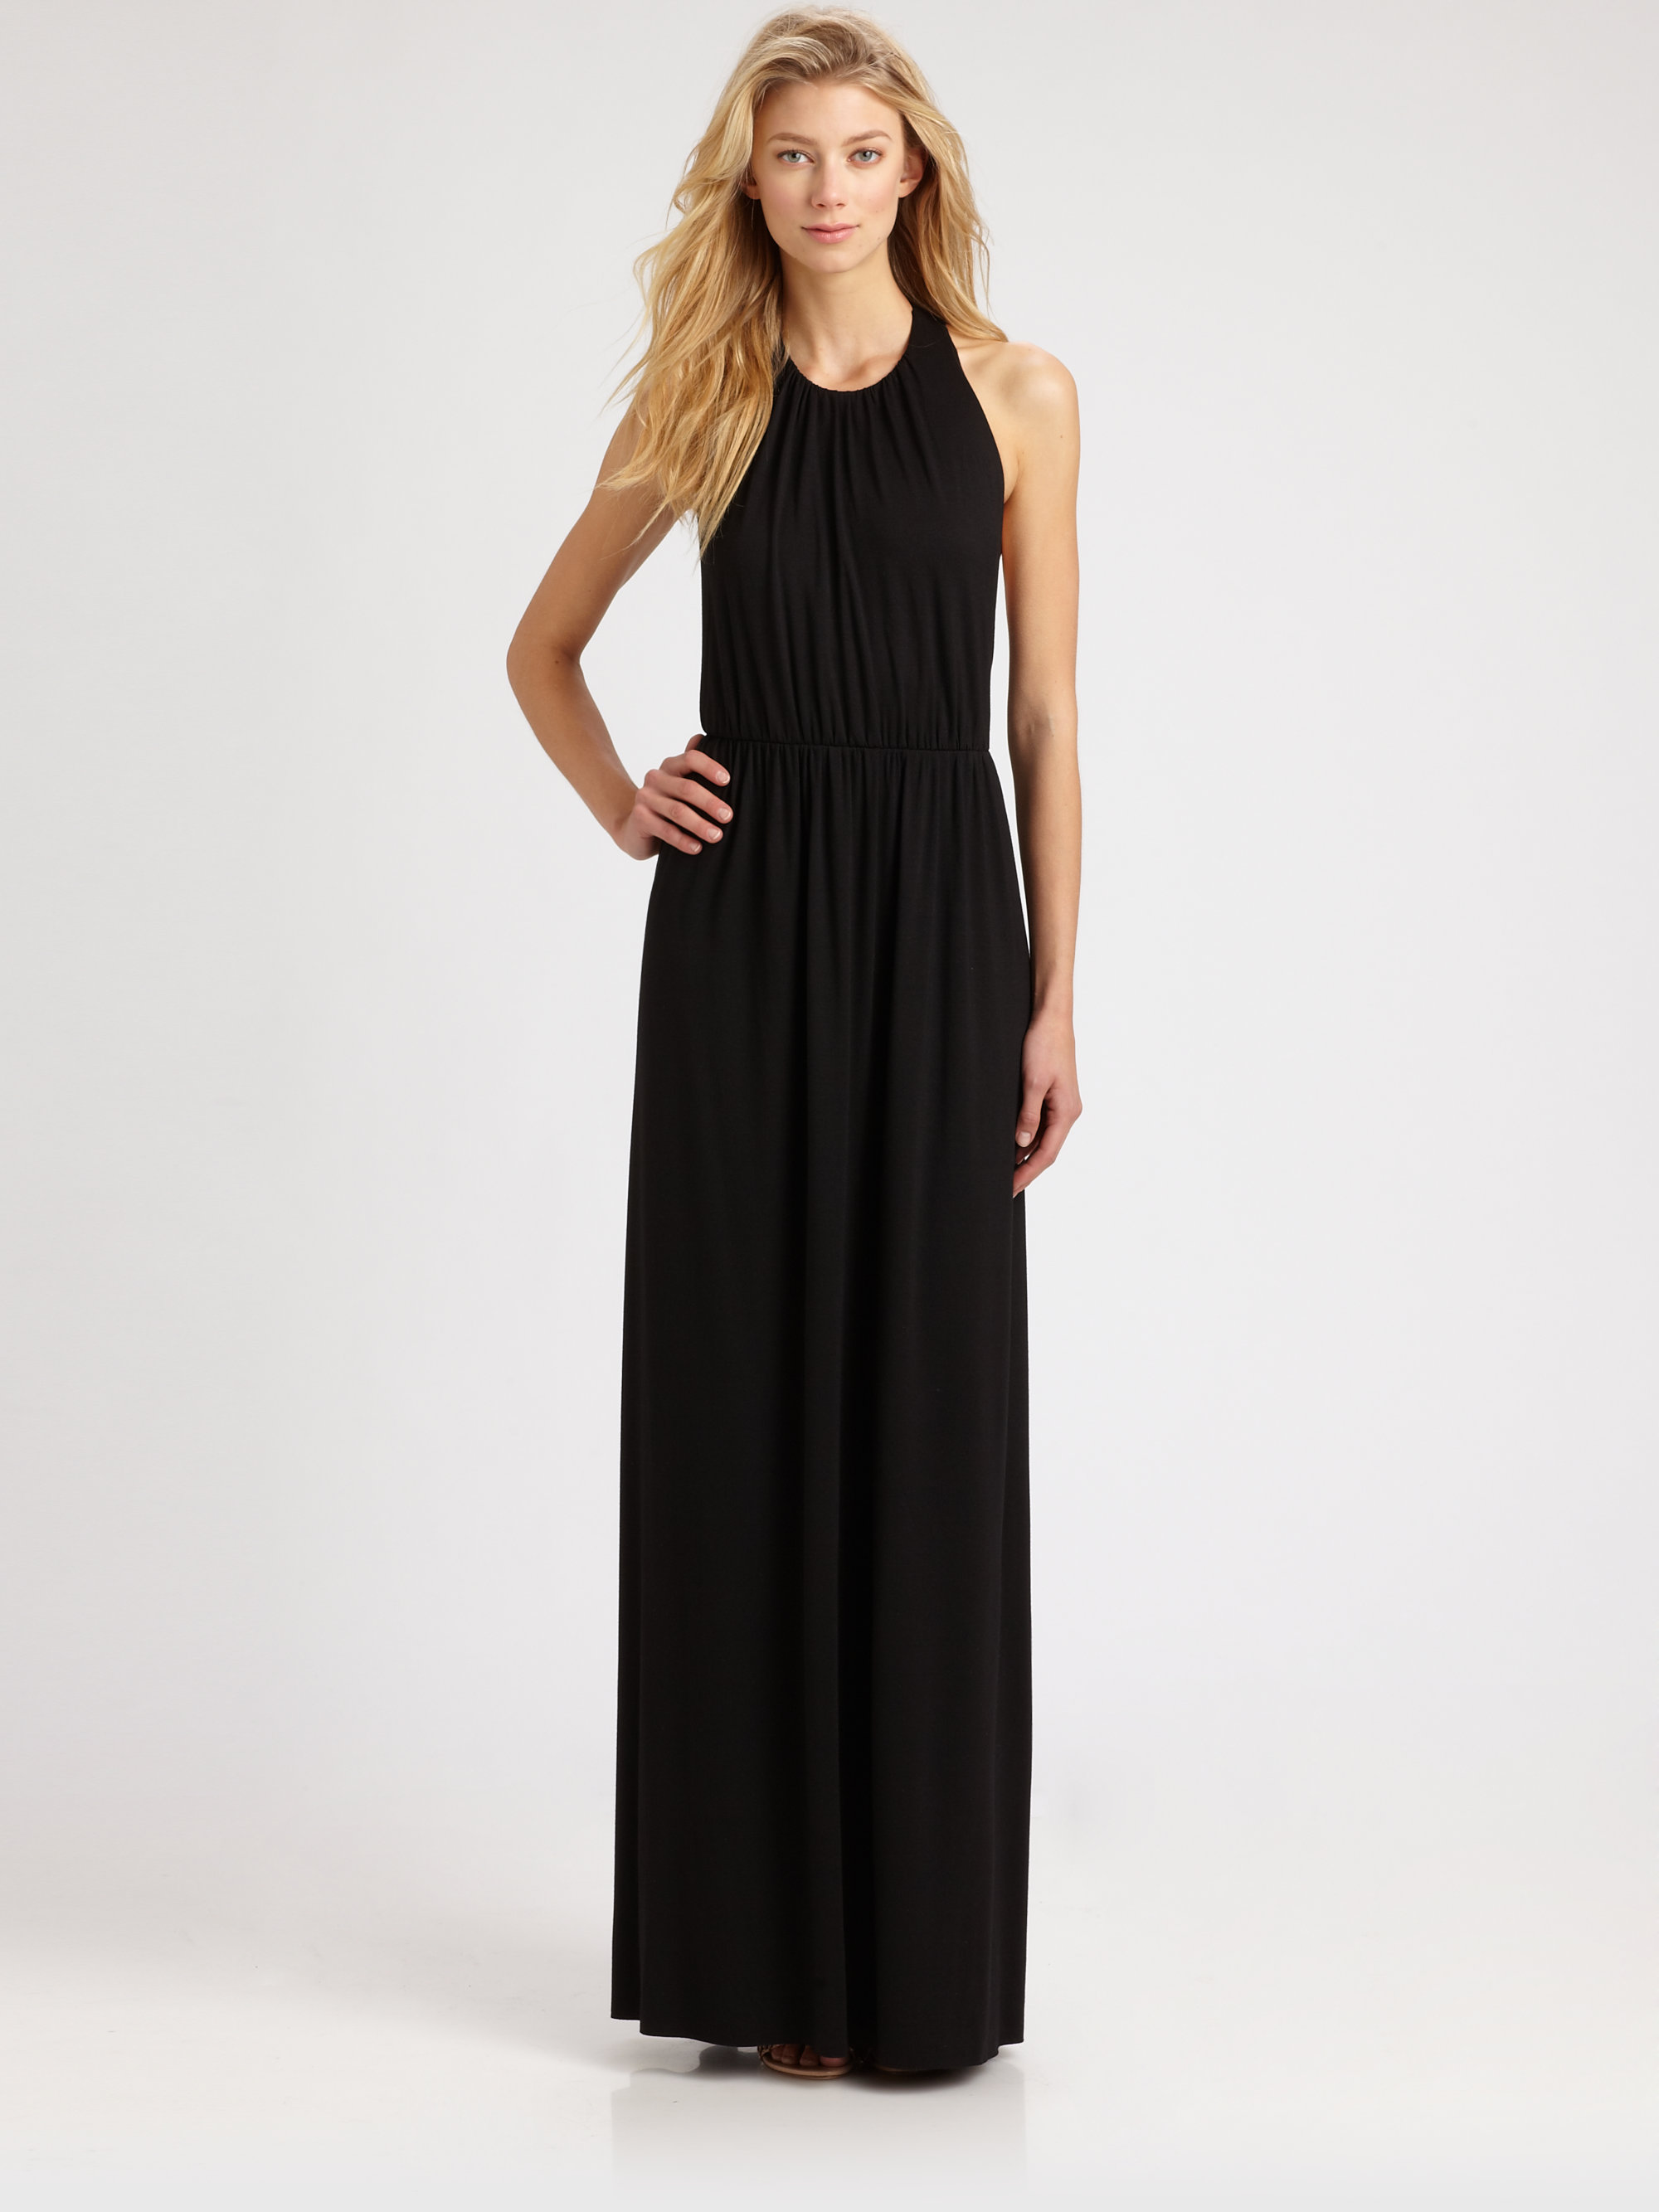 Rachel Pally Dejan Maxi Dress in Black | Lyst